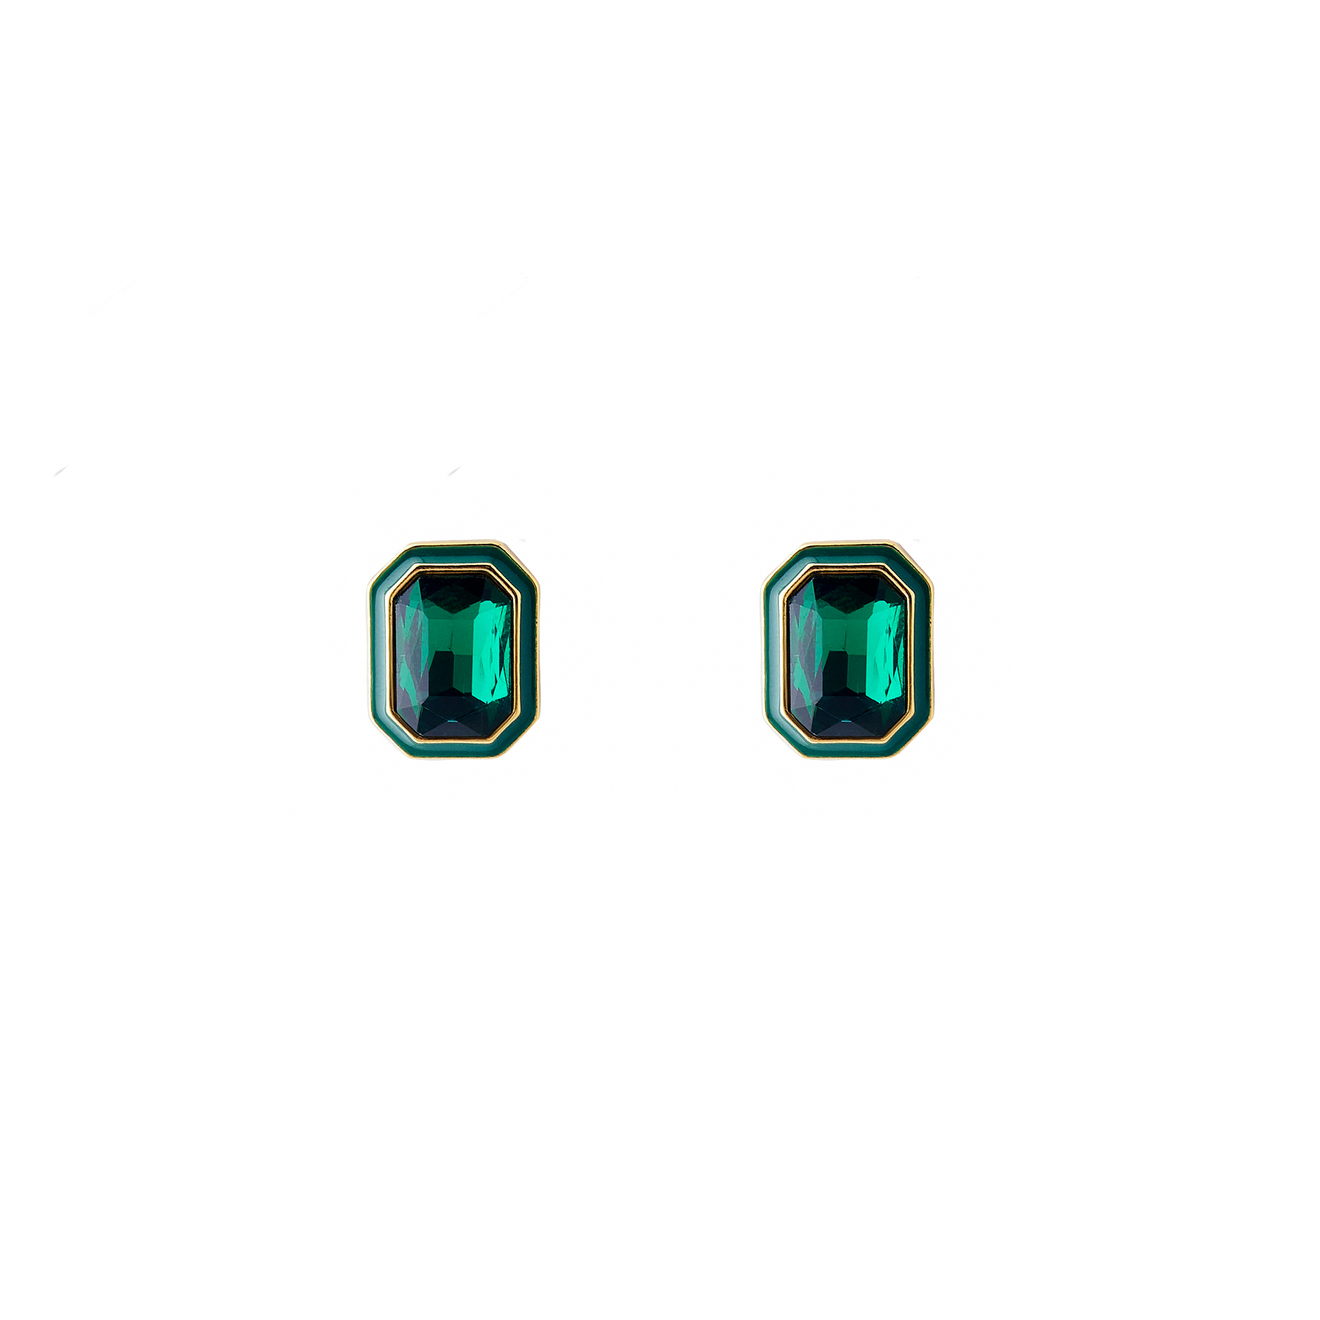 Herald Percy Крупные золотистые серьги с зелеными кристаллами и зеленой эмалью aqua золотистые серьги с красно зелеными бусинами